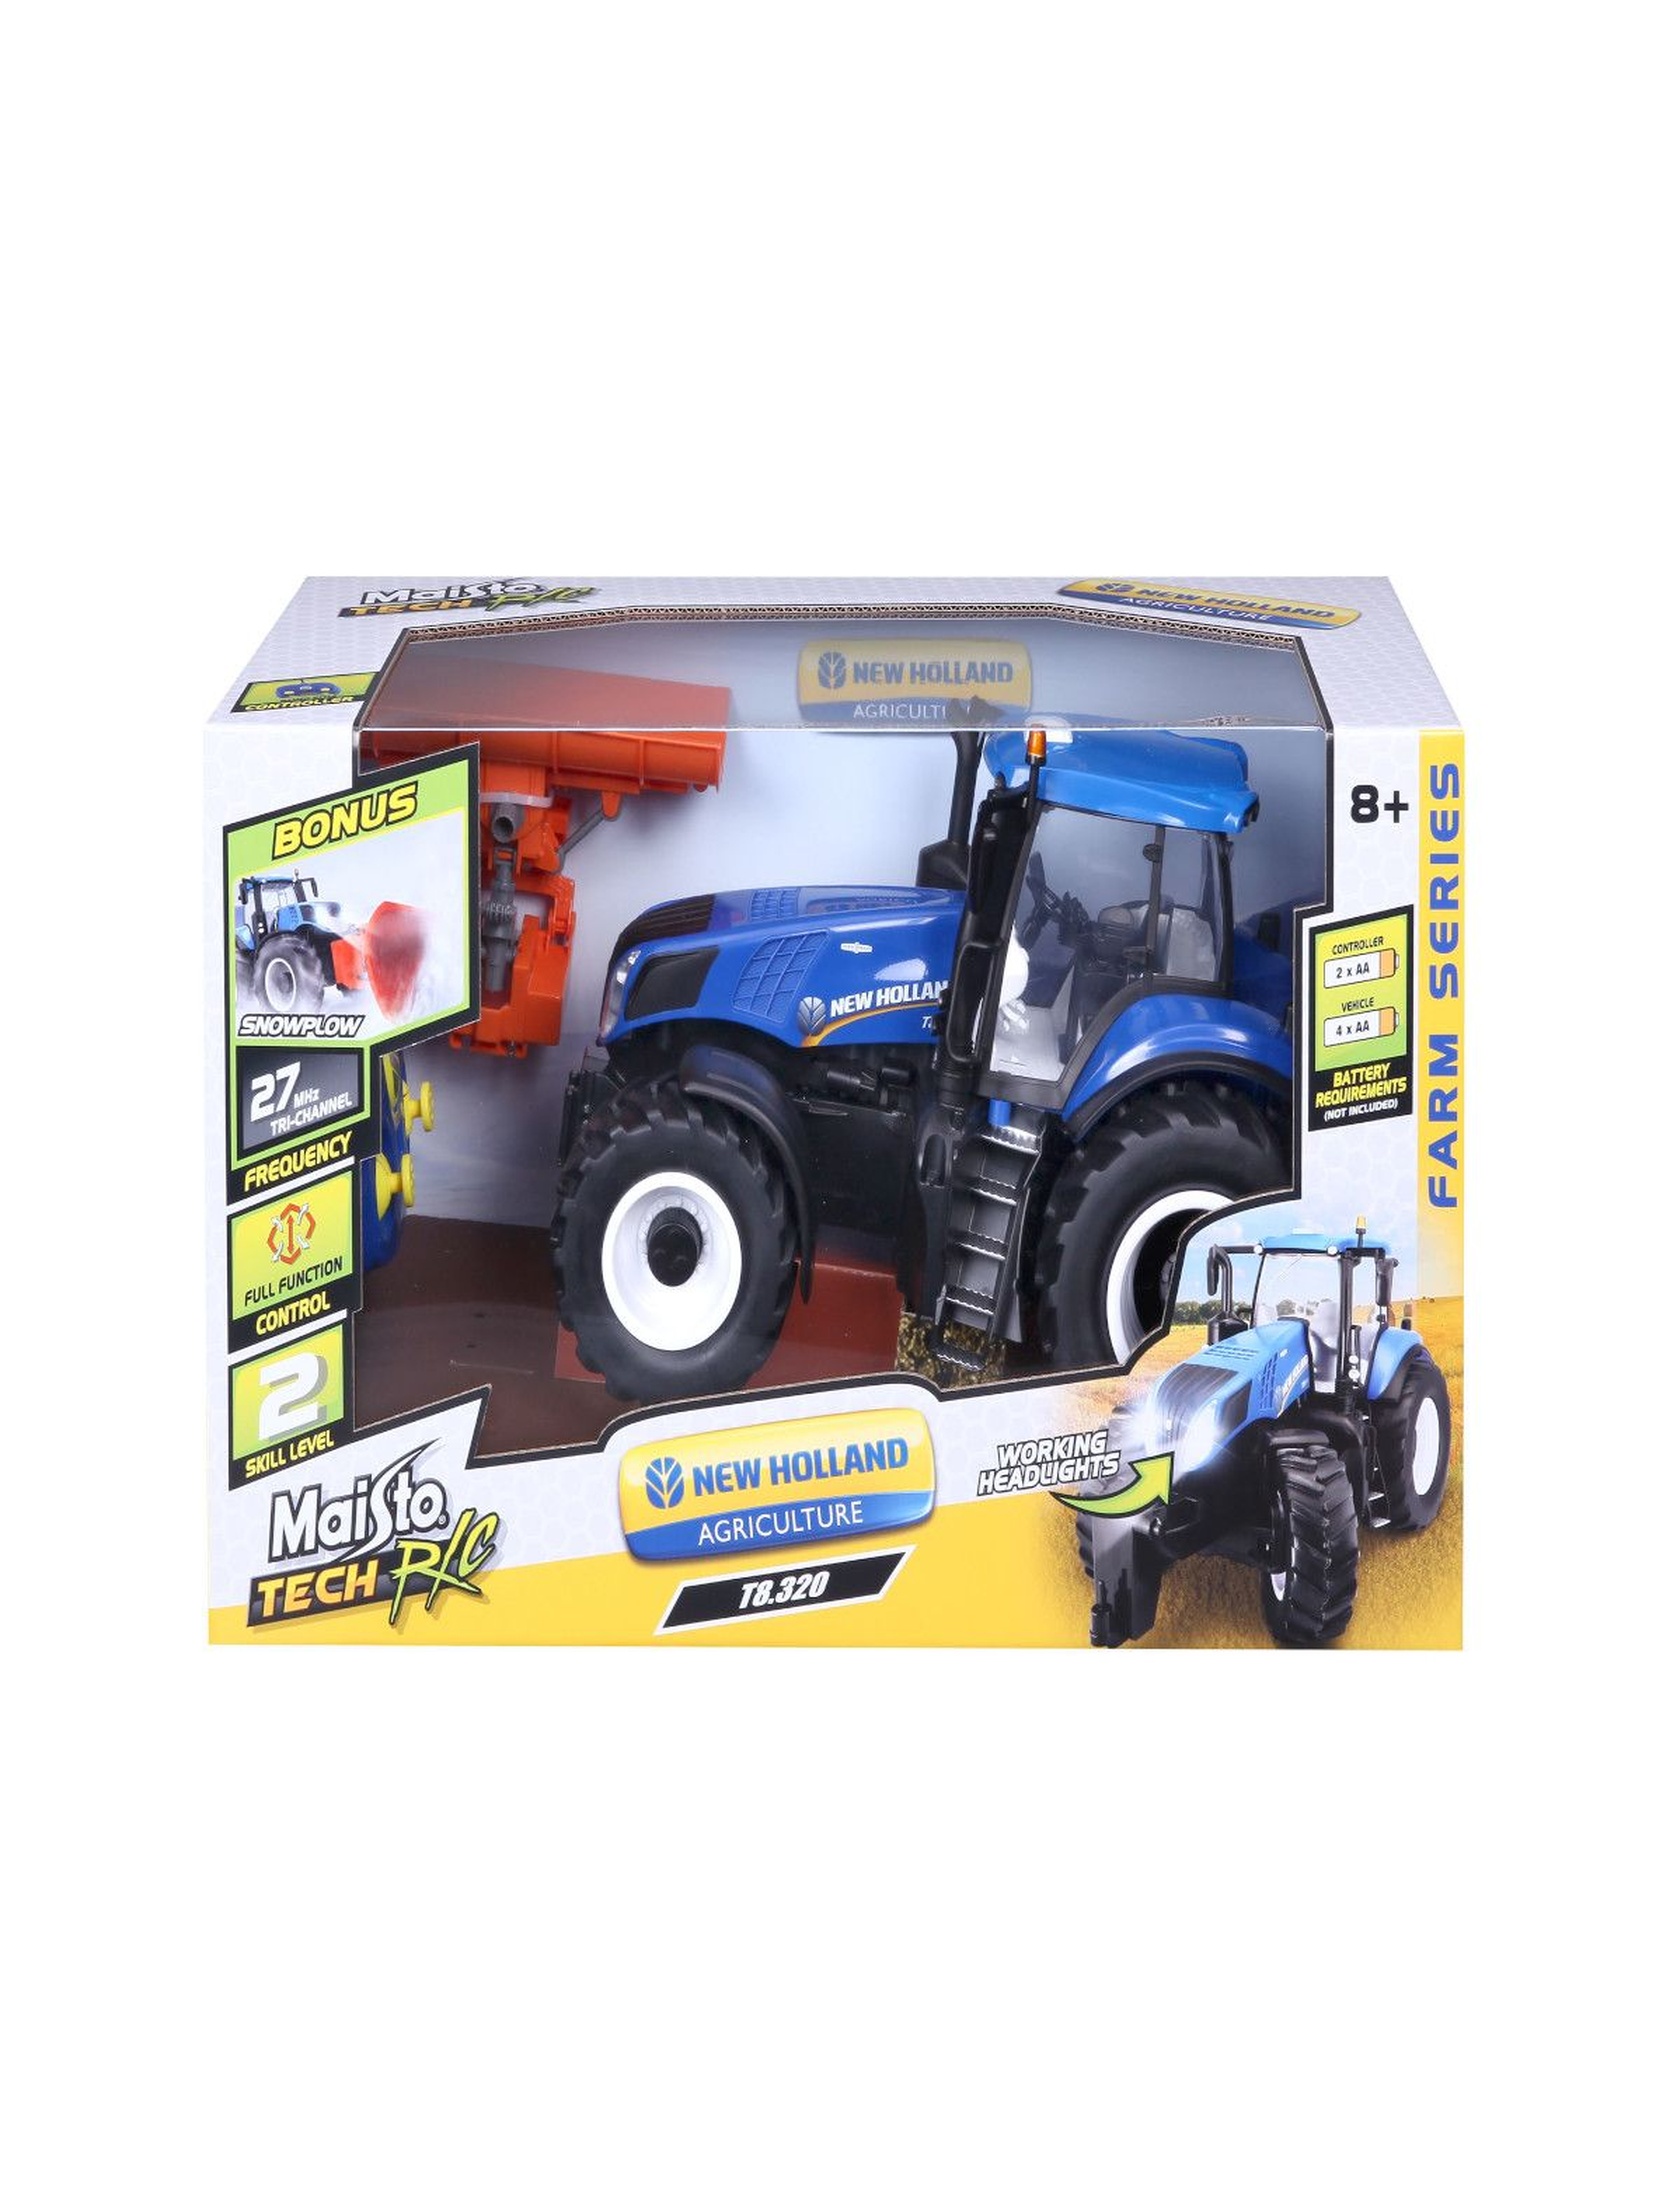 Zdalnie sterowany traktor na licencji New Holland wiek 8+